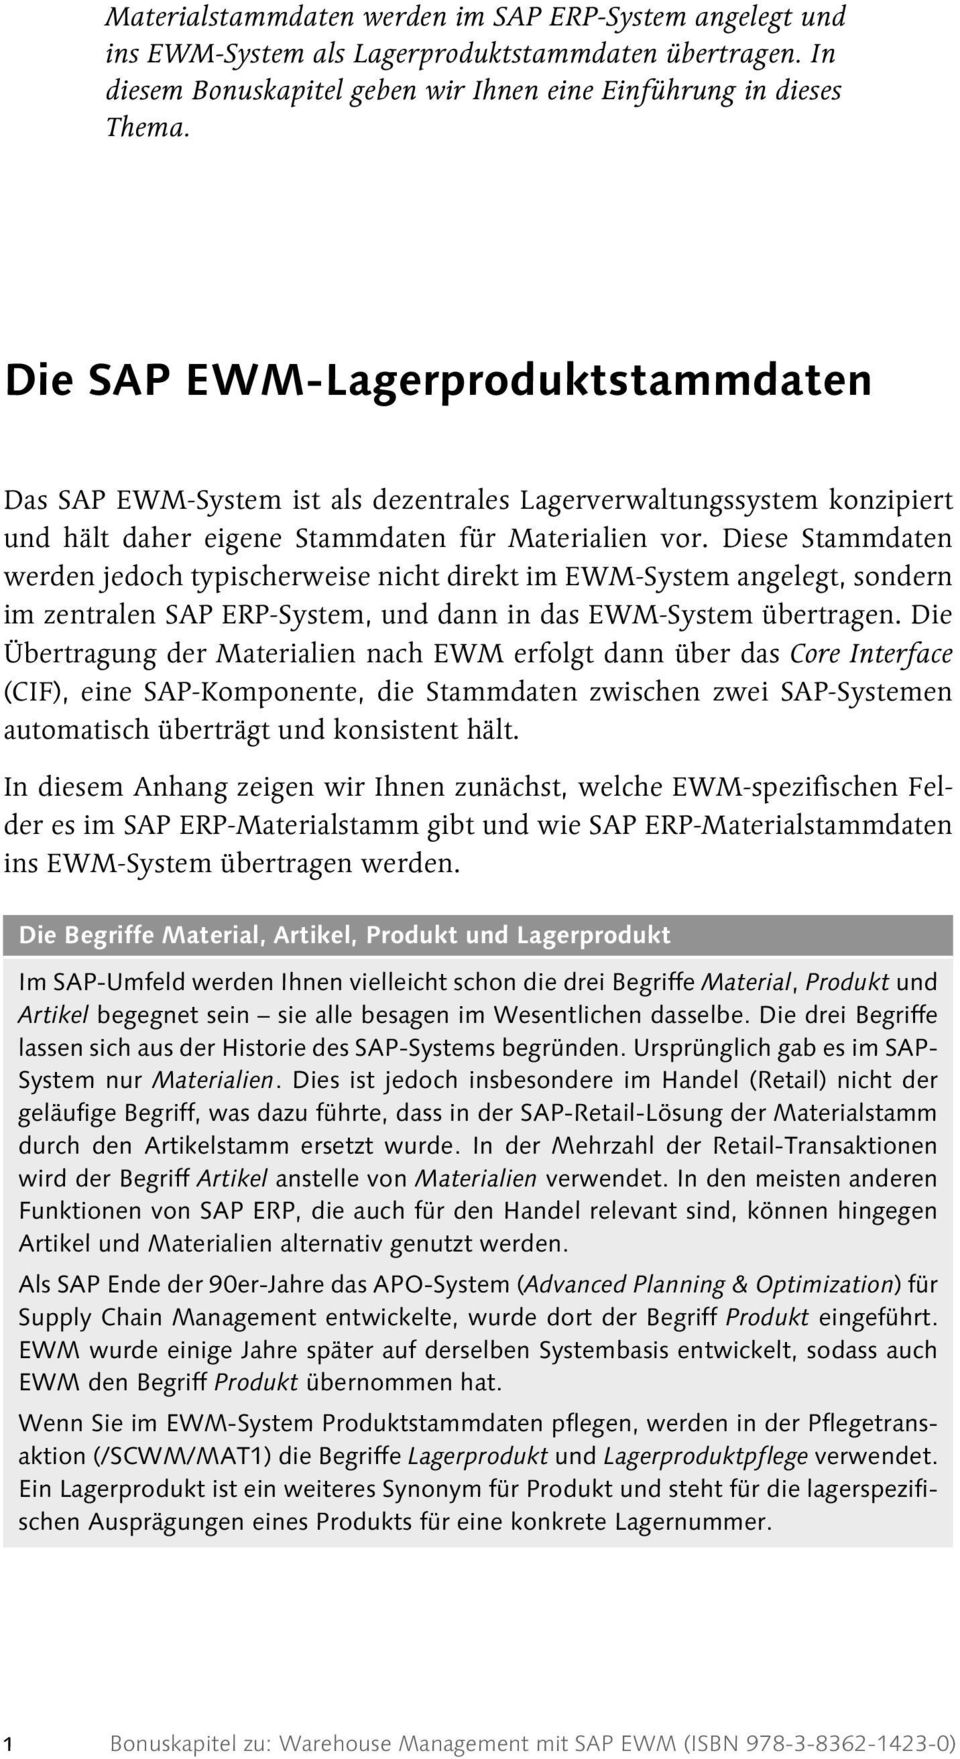 Diese Stammdaten werden jedoch typischerweise nicht direkt im EWM-System angelegt, sondern im zentralen SAP ERP-System, und dann in das EWM-System übertragen.